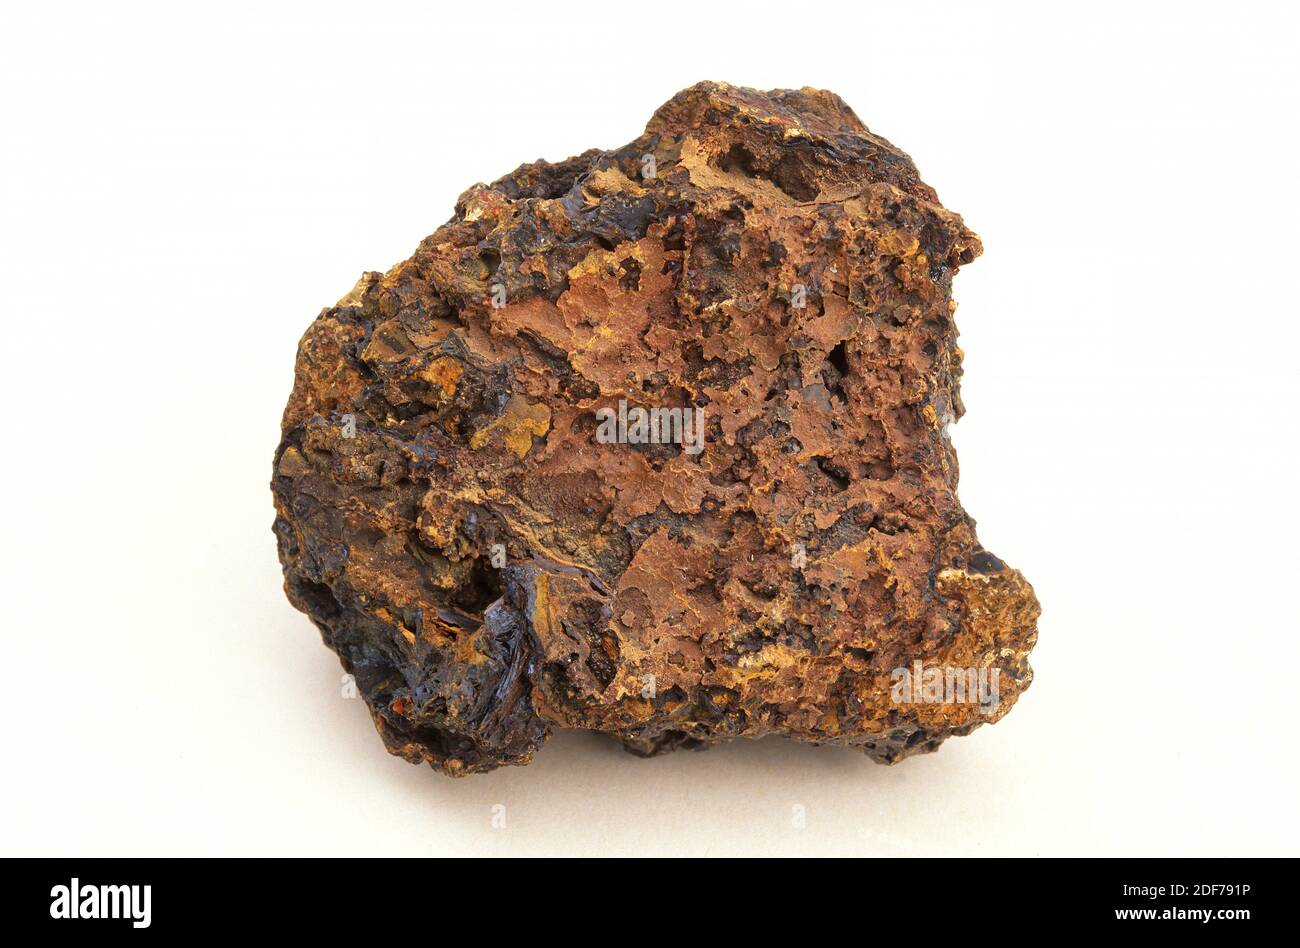 La limonita es un mineral de hierro compuesto por diferentes óxidos e hidroxides de hierro (goetita, hematita, magnetita). Muestra. Foto de stock